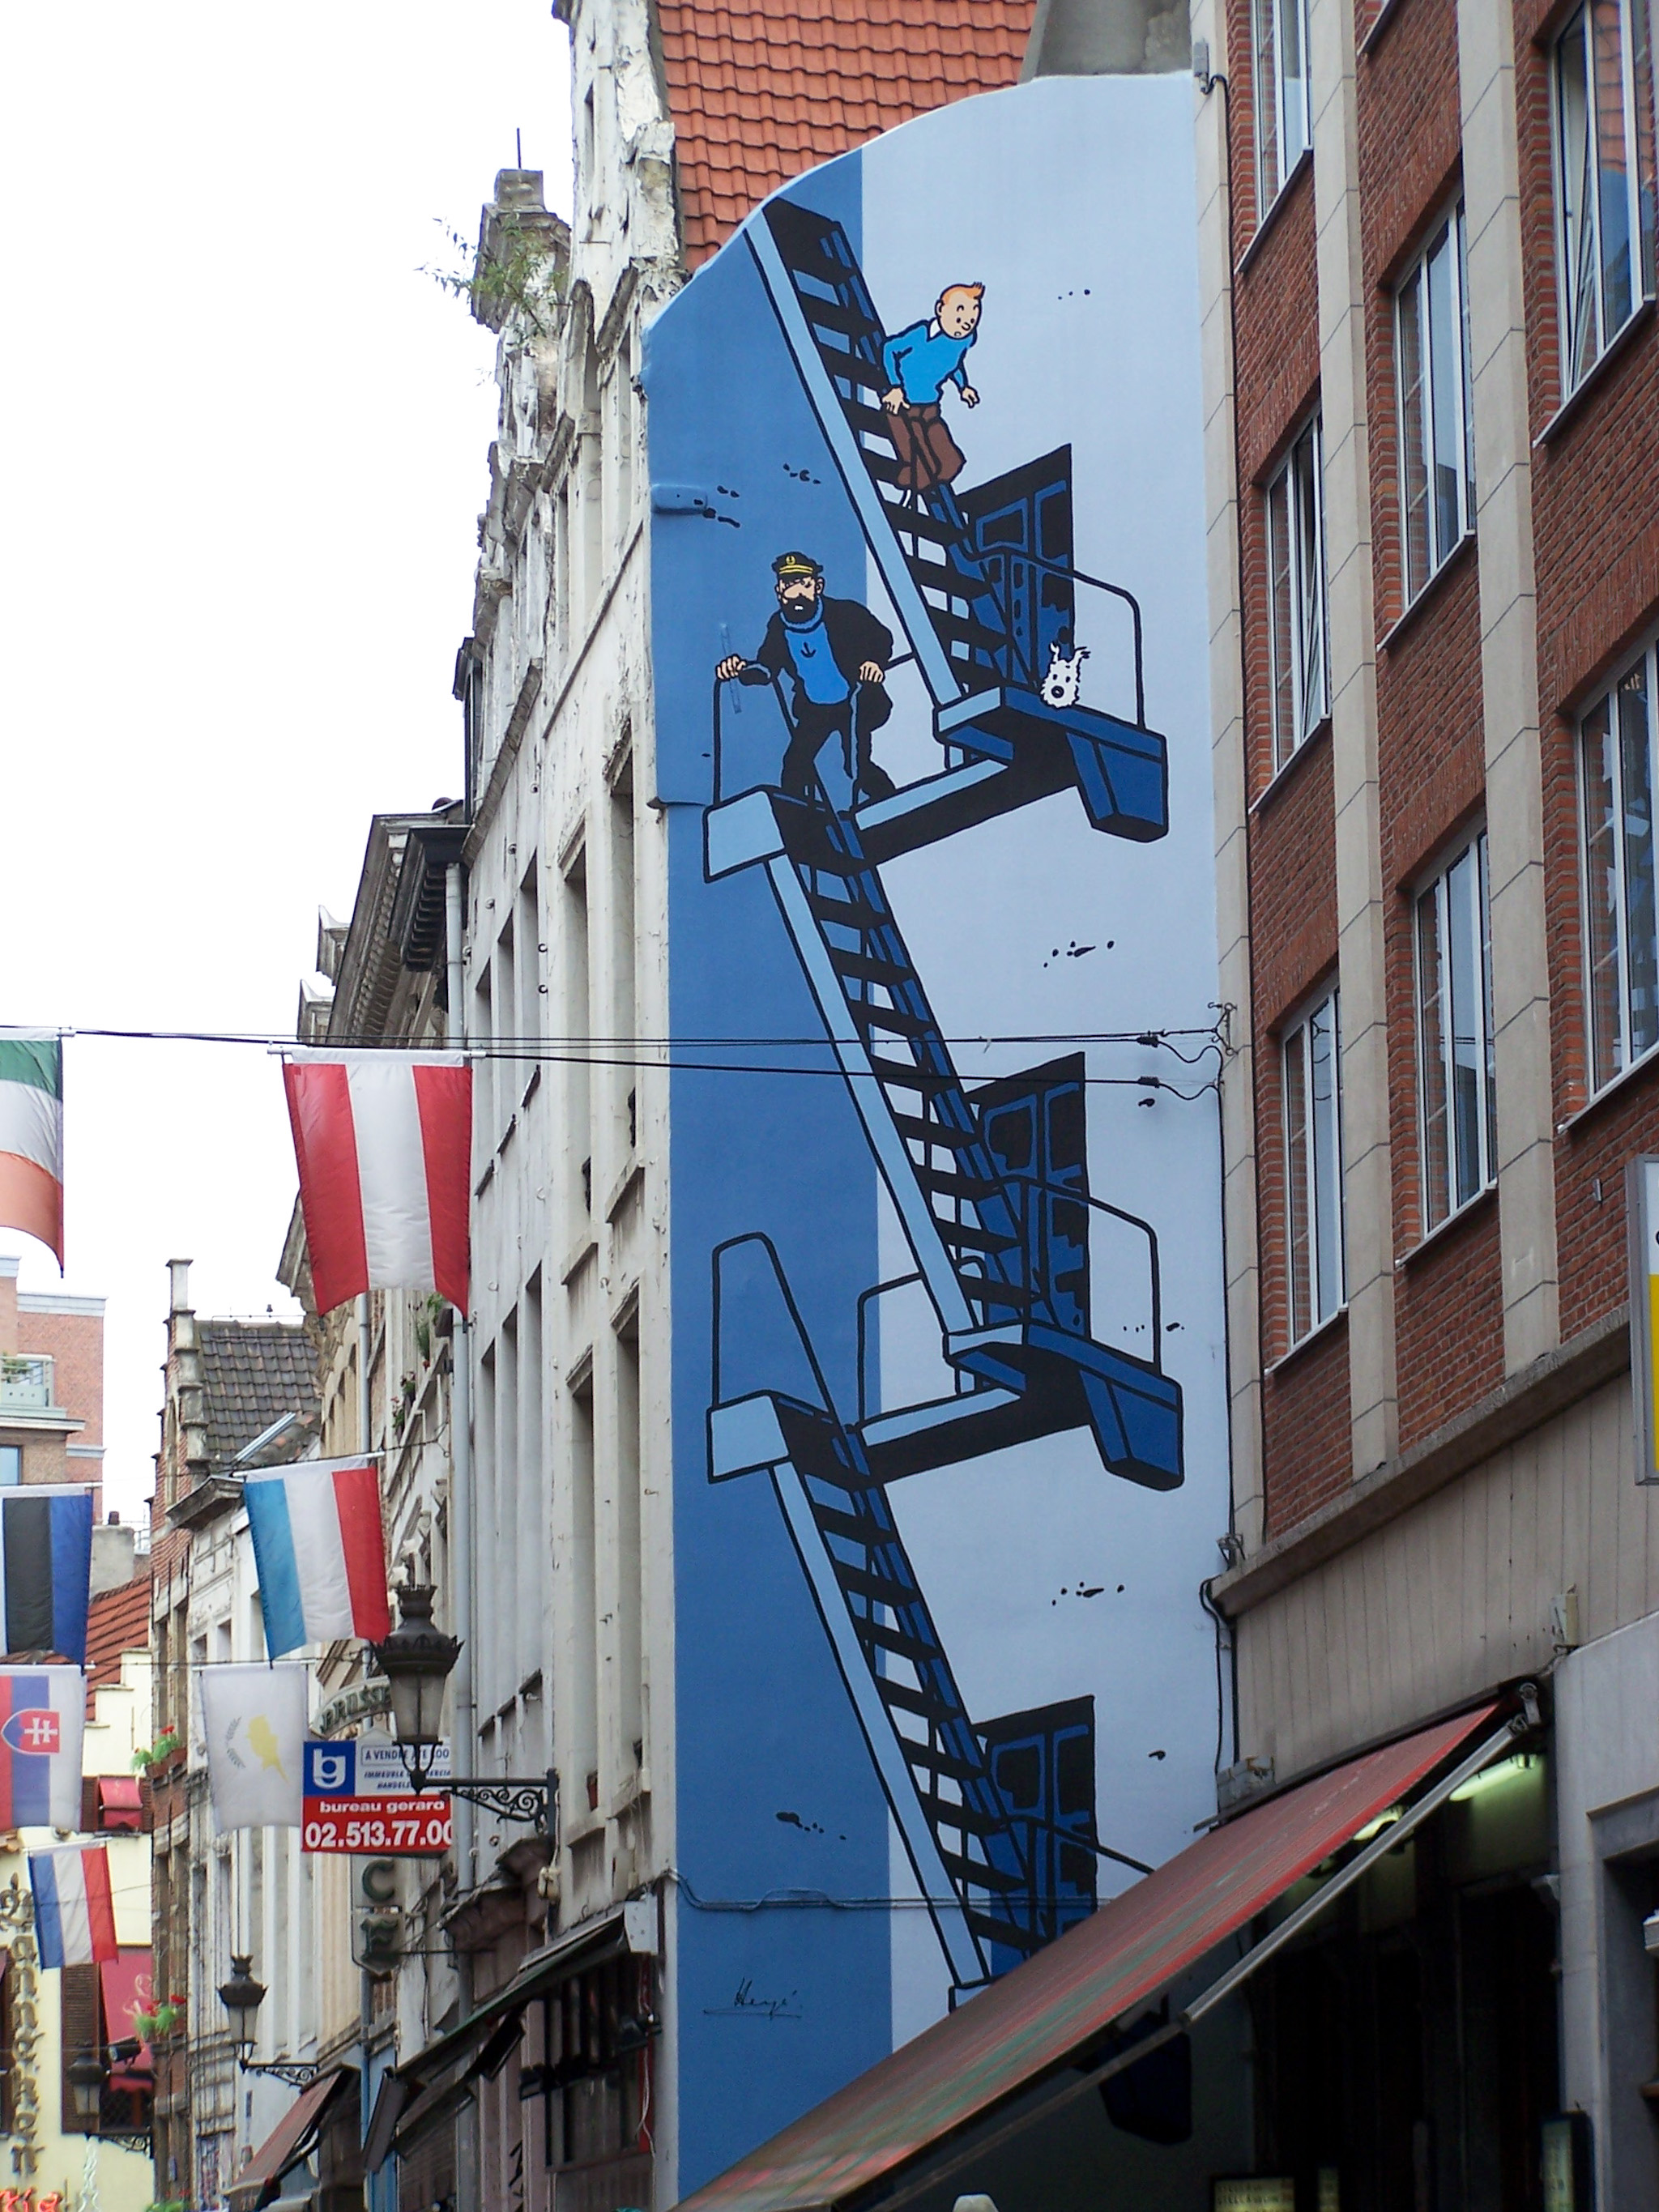 Tintin, miejsce: Rue de l’etuve